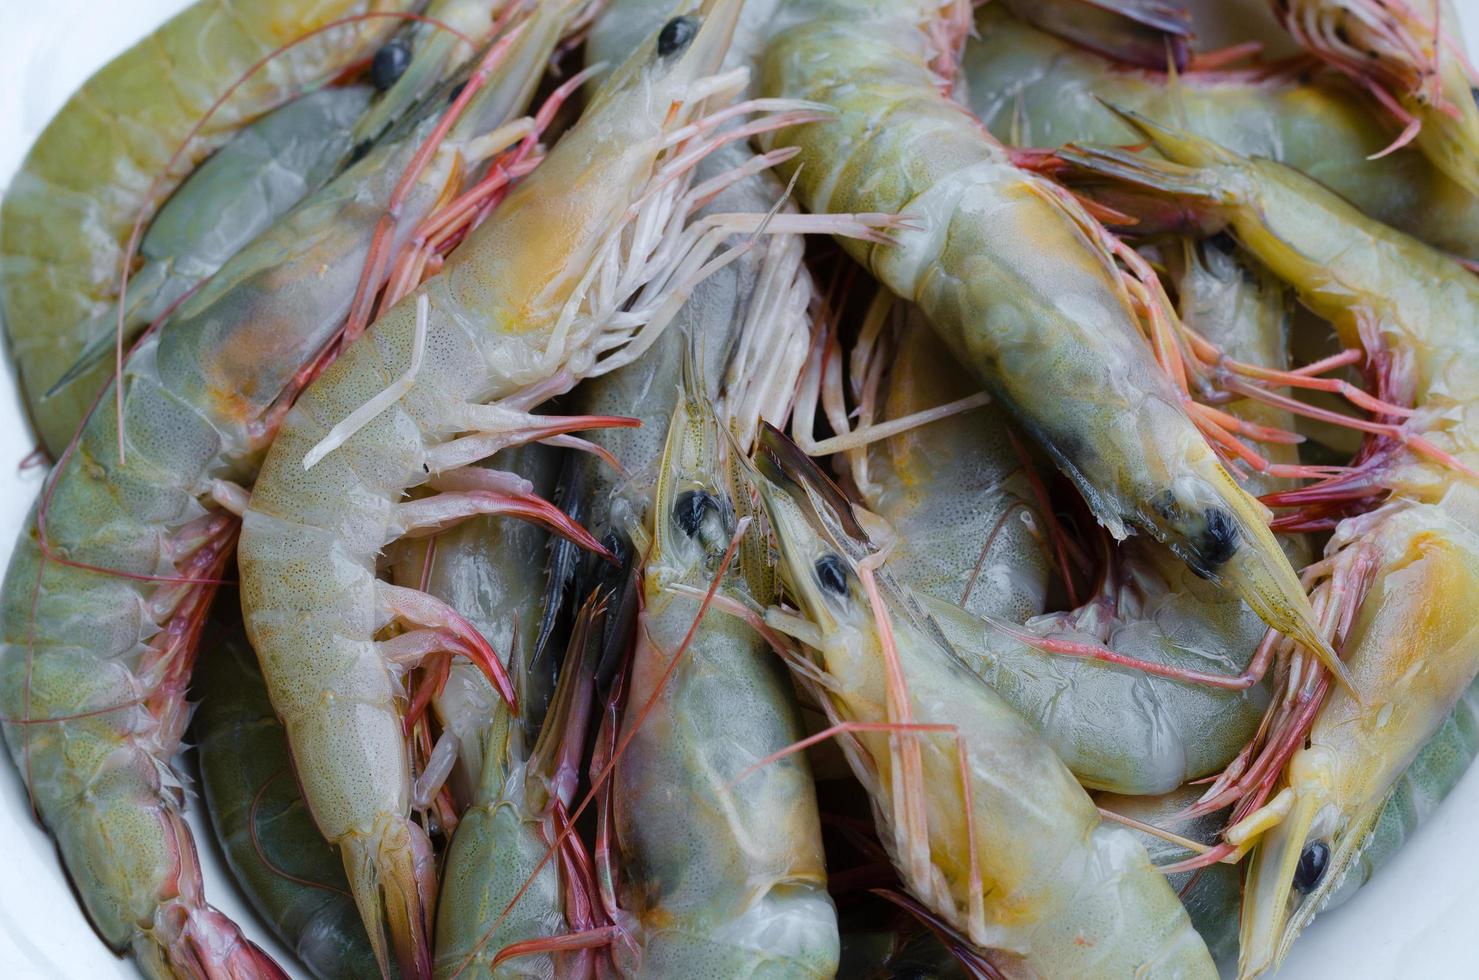 Frais crevettes pour Fruit de mer cuisine photo